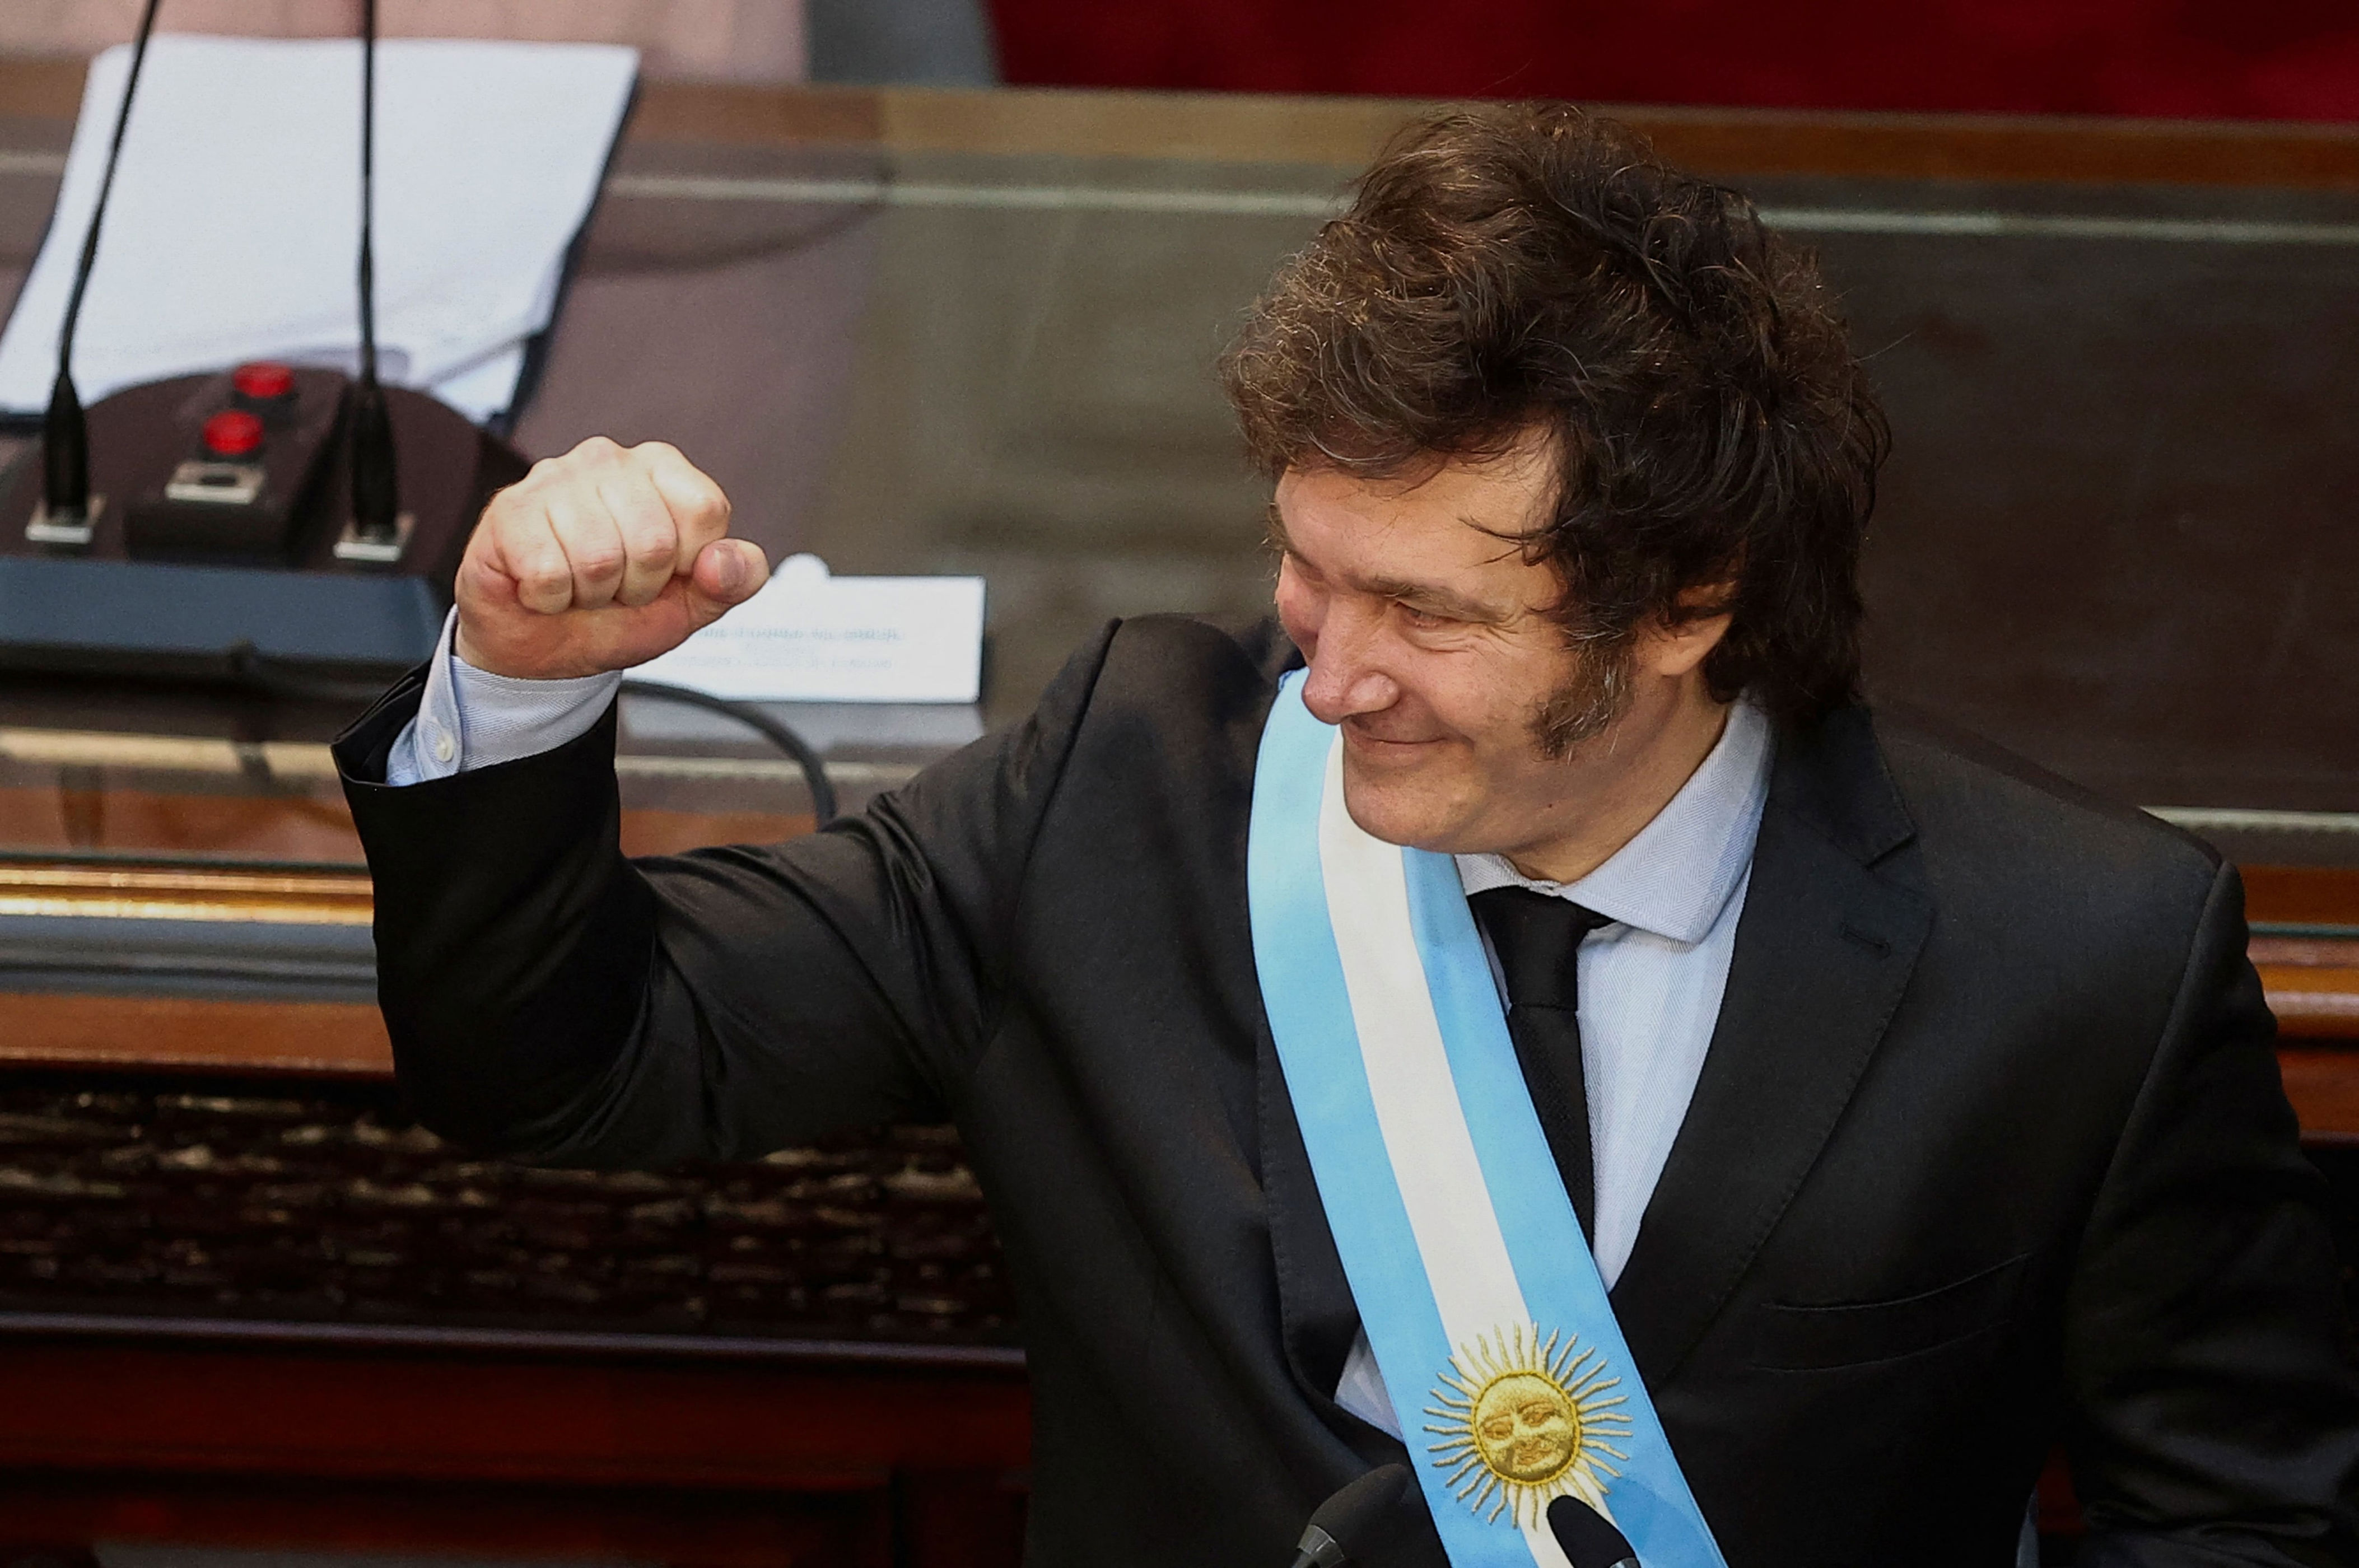 milei celebra aprobación de ley bases en cámara de diputados: “primer paso para sacar a argentina del pantano”